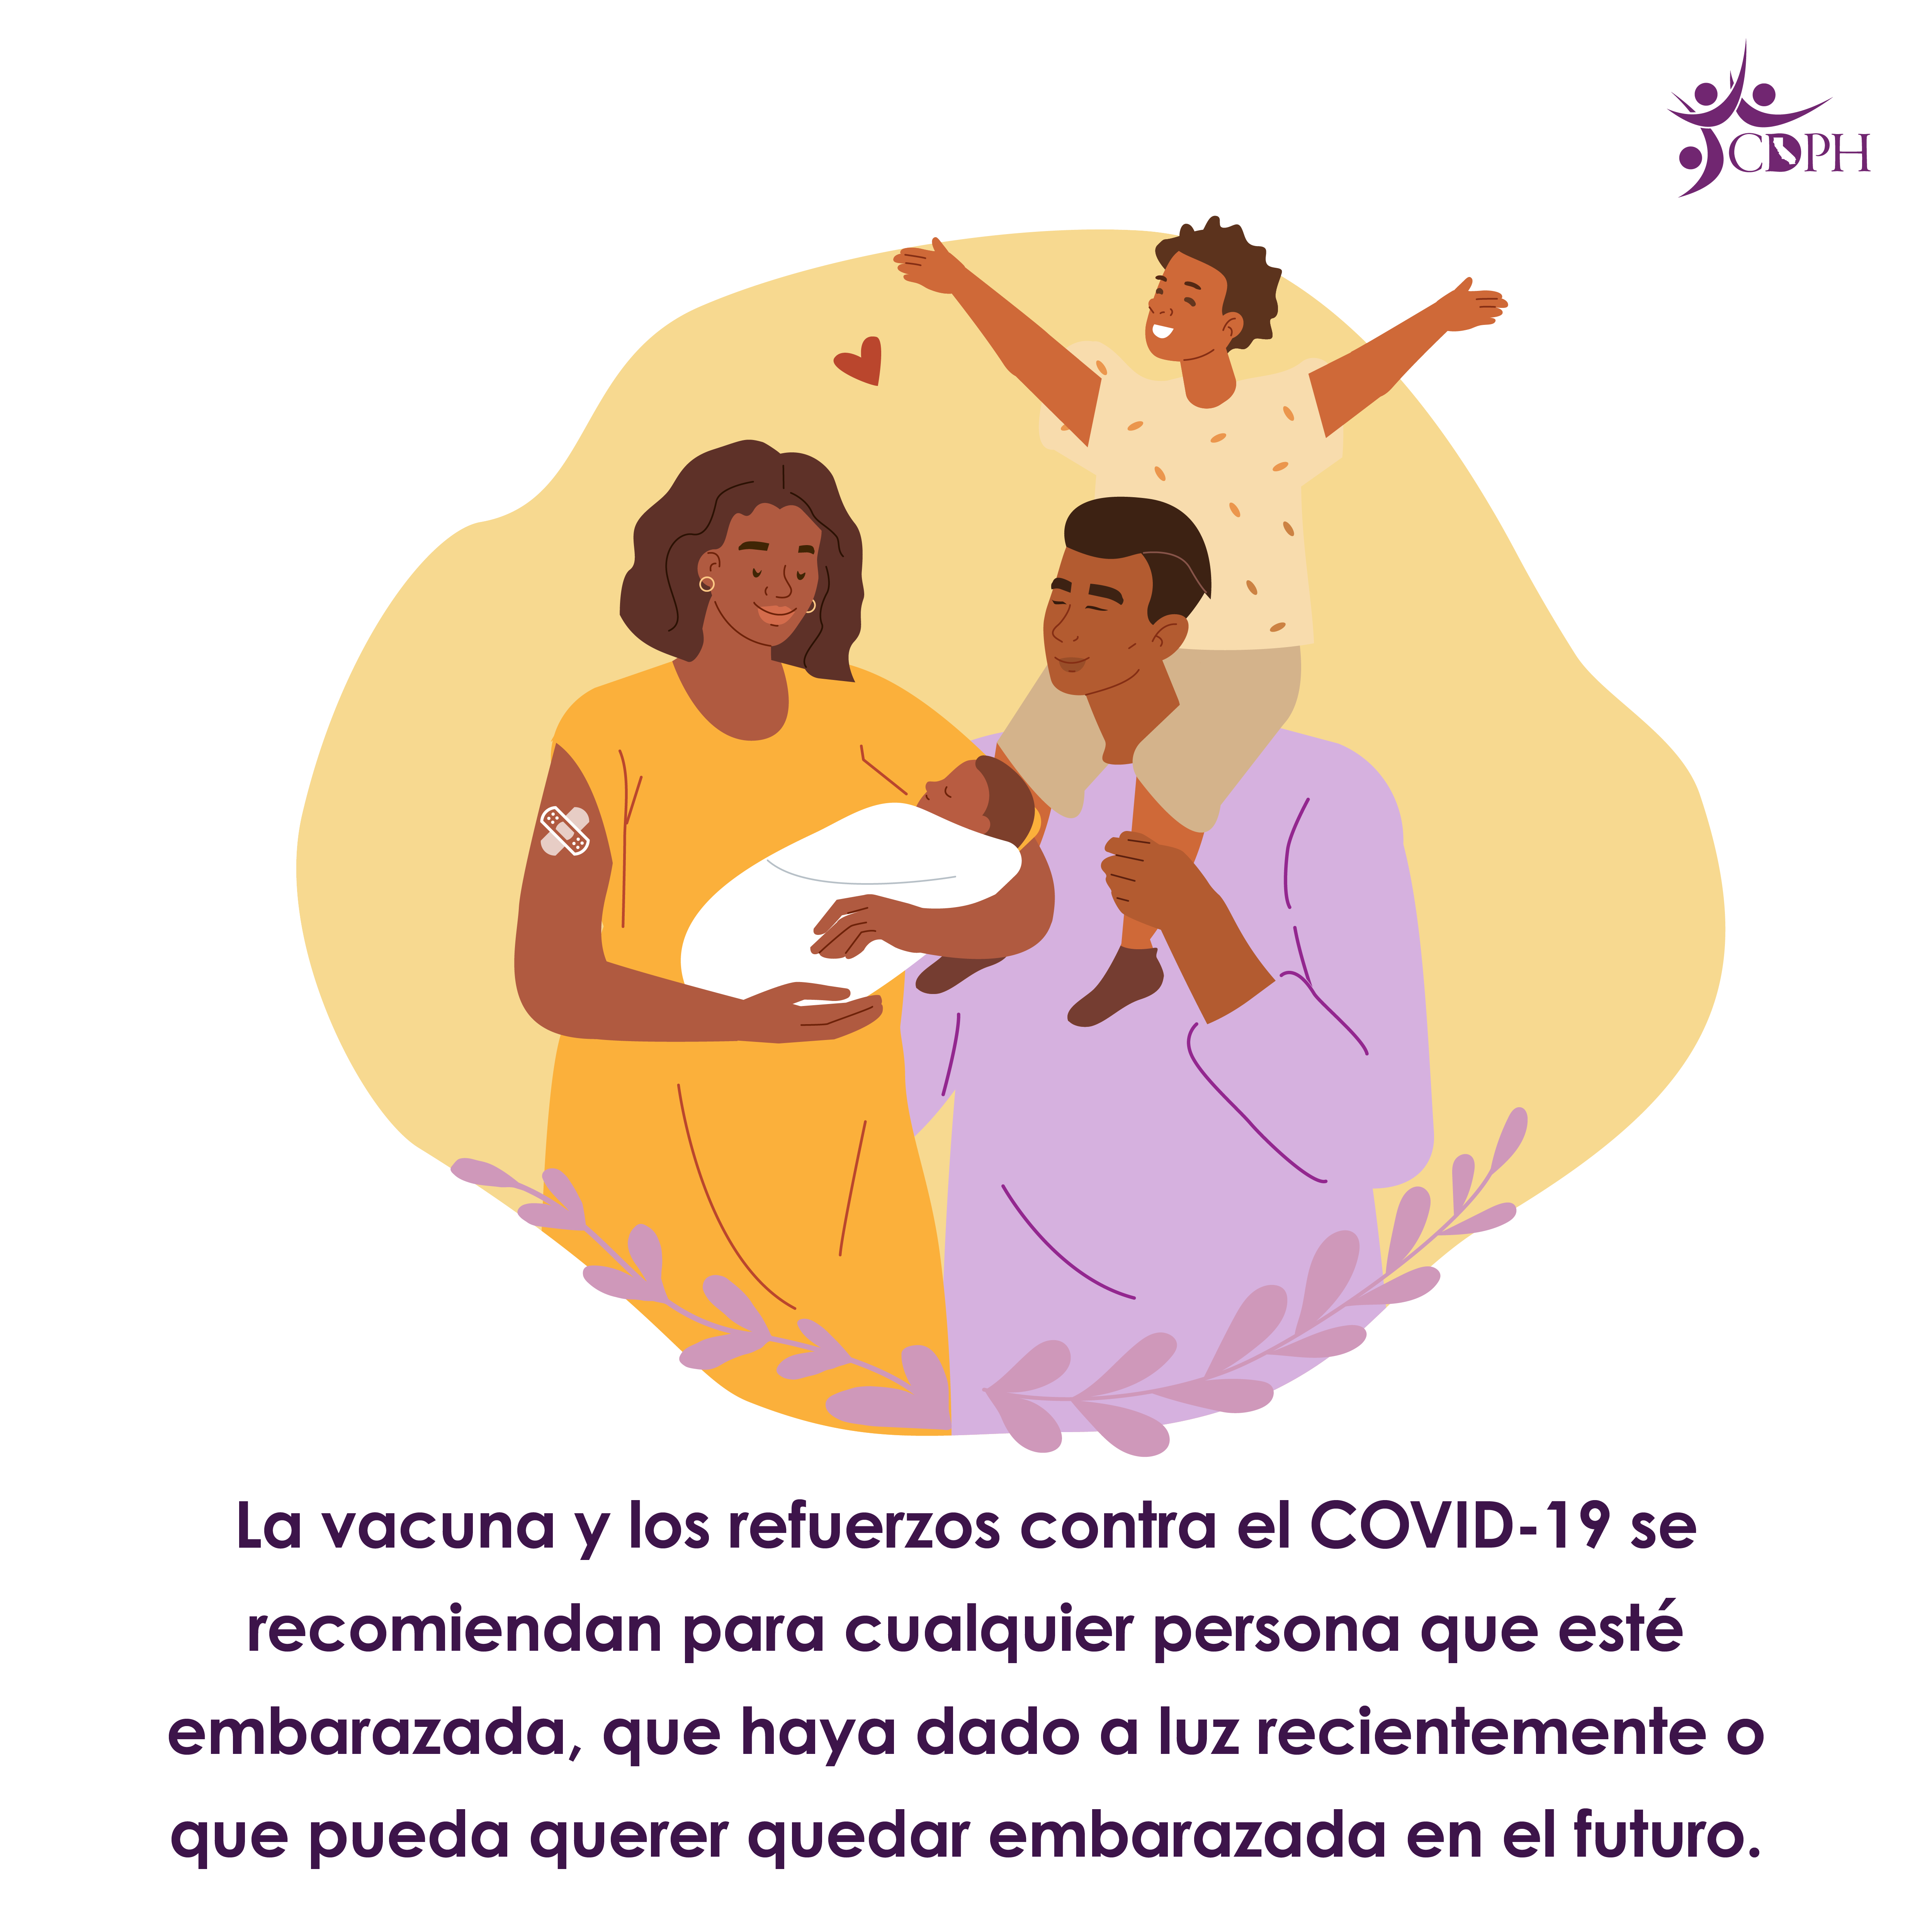 Las vacunas contra el COVID-19 reducen tus probabilidades de enfermarte gravemente o de necesitar ser hospitalizado por COVID-19